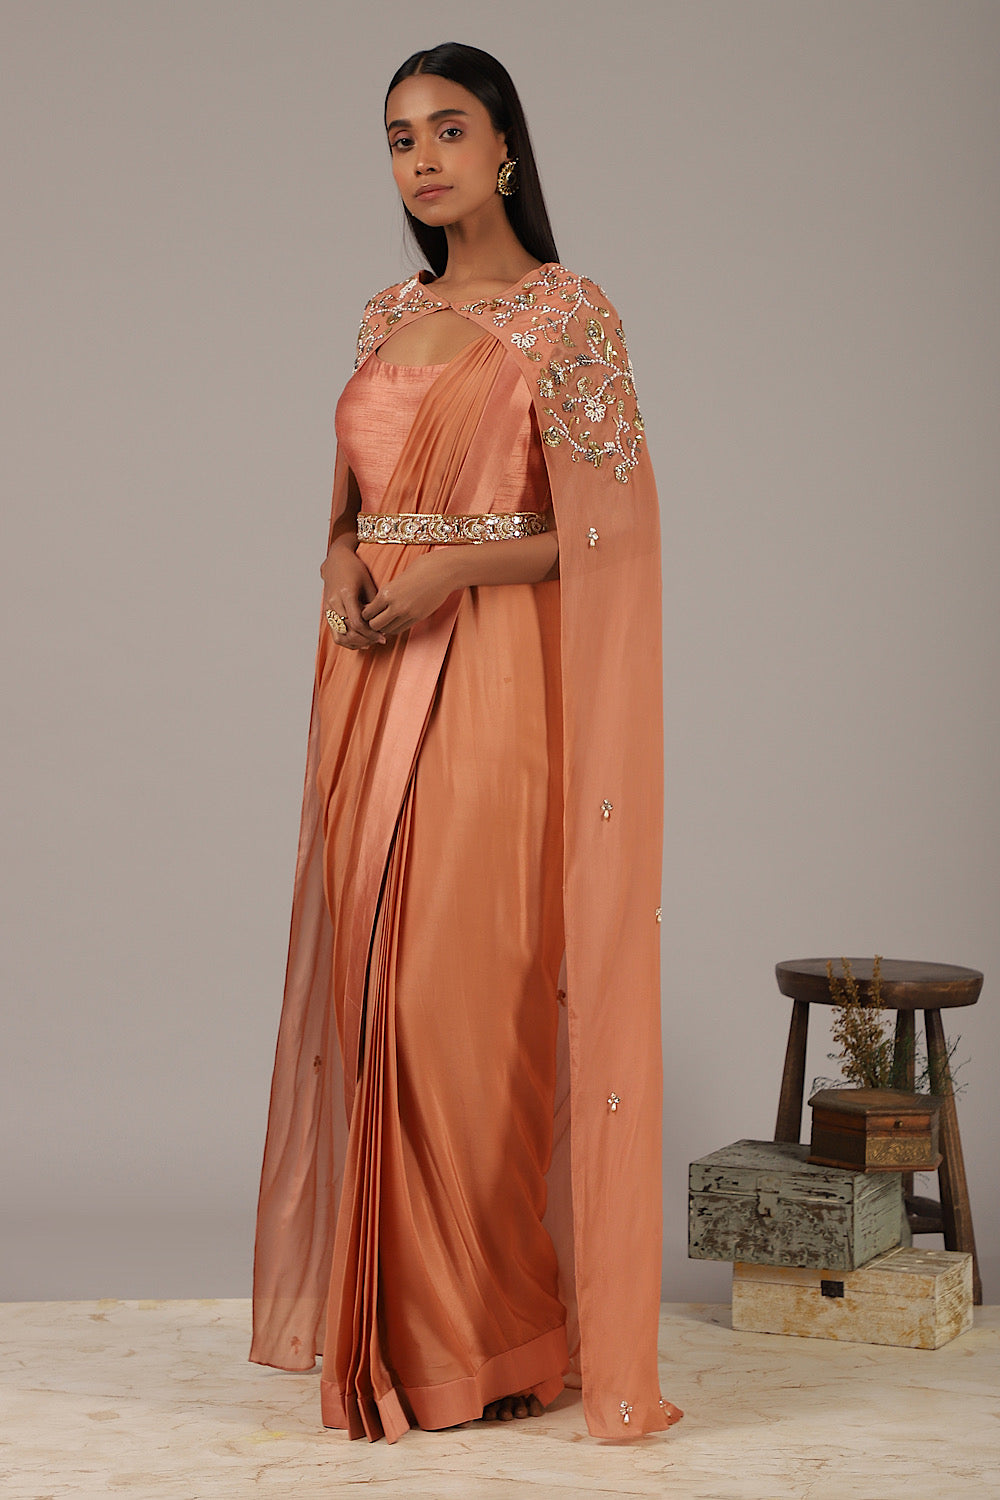 Pankhi Cape Saree Gown